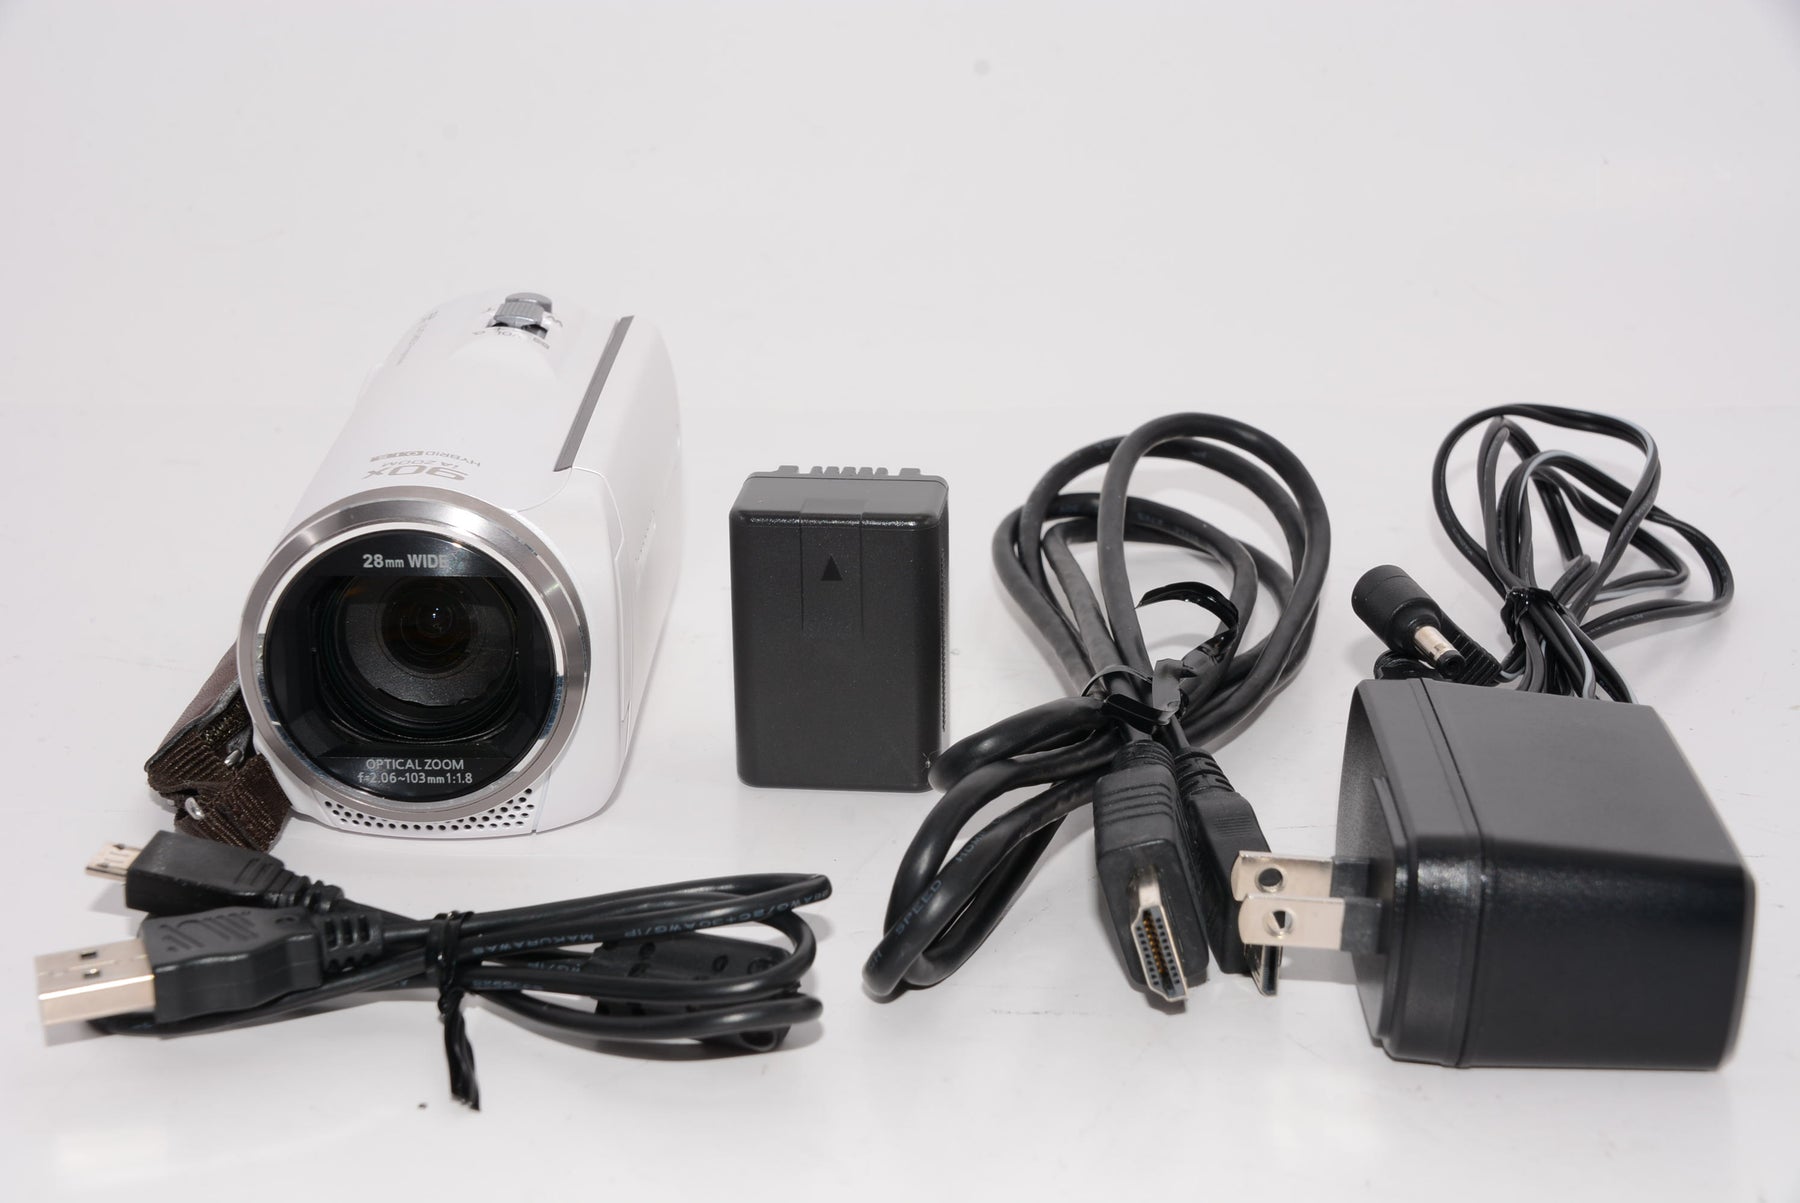 パナソニック HDビデオカメラ 高倍率90倍ズーム ホワイト V360MS